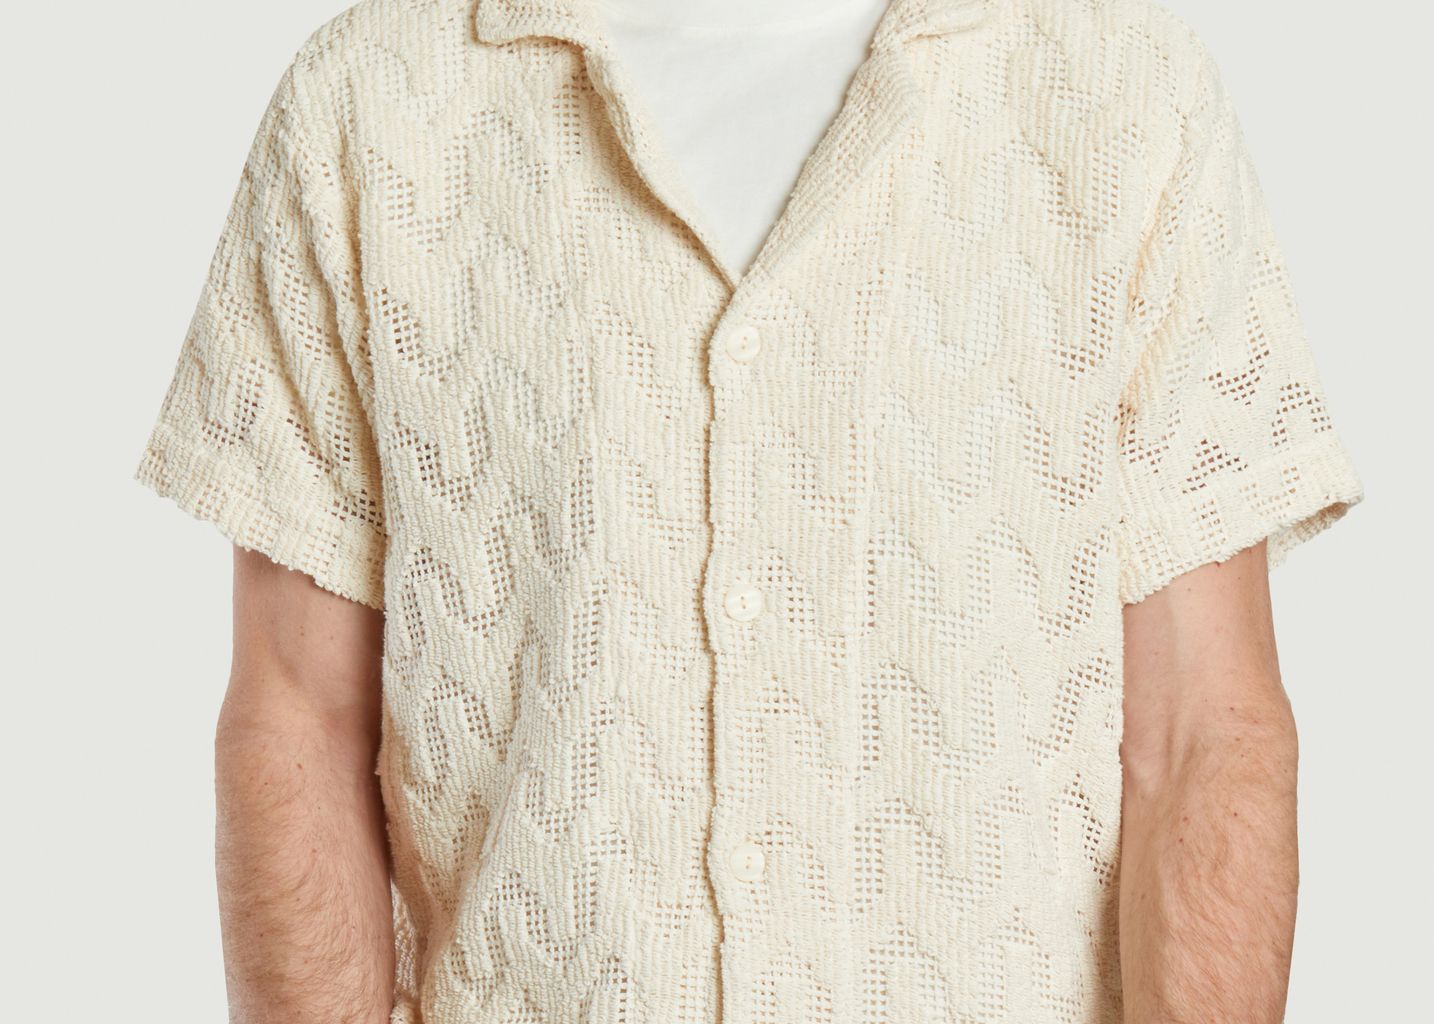 Cuba Crochet Shirt - OAS company